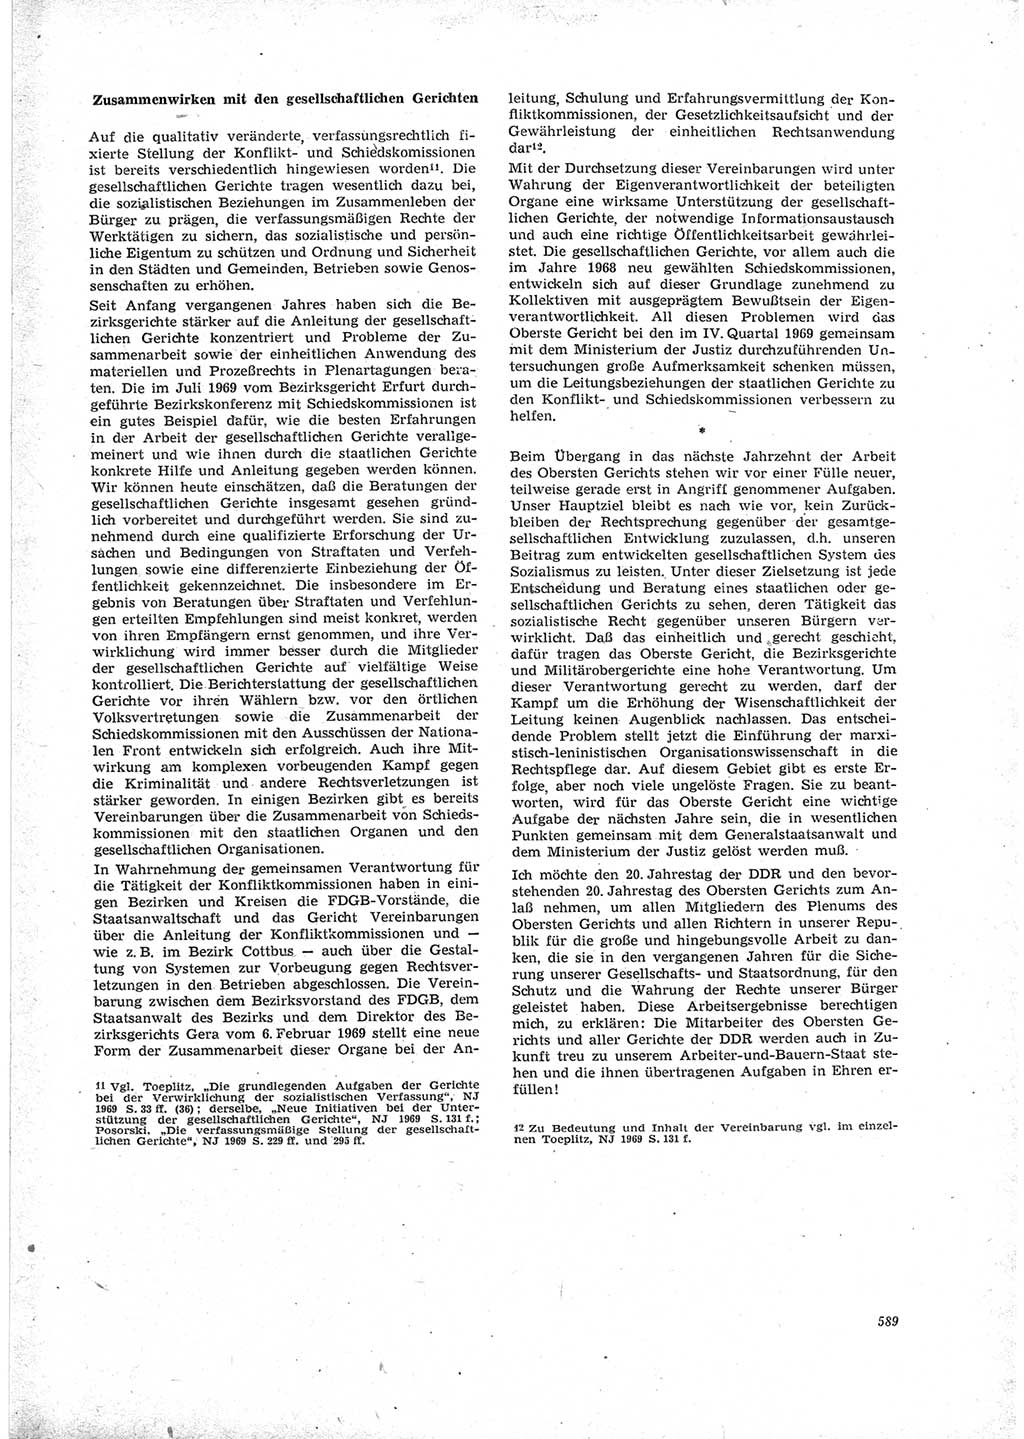 Neue Justiz (NJ), Zeitschrift für Recht und Rechtswissenschaft [Deutsche Demokratische Republik (DDR)], 23. Jahrgang 1969, Seite 589 (NJ DDR 1969, S. 589)